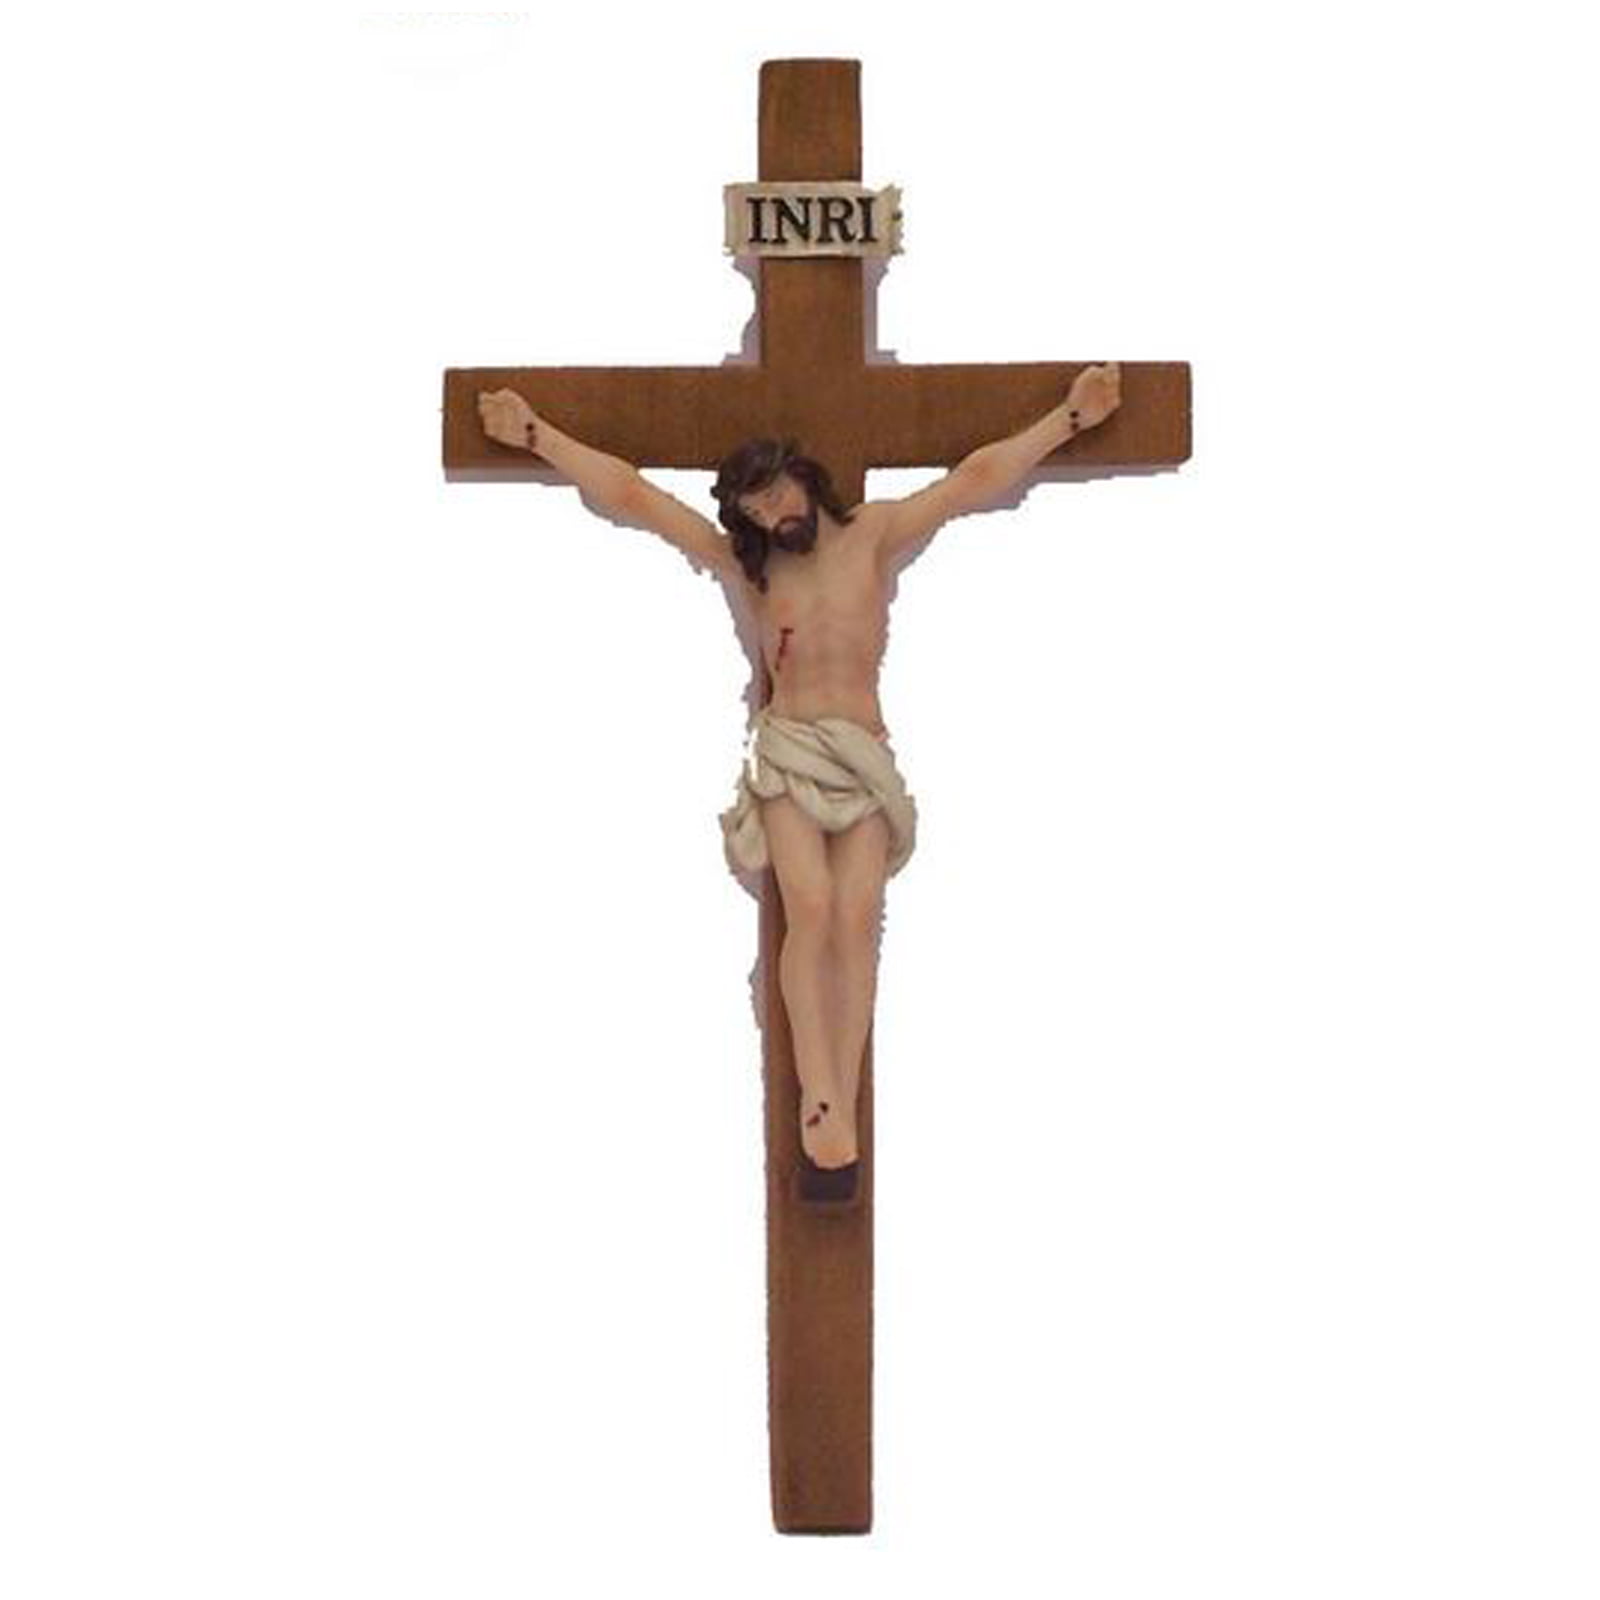 jesus cross weight